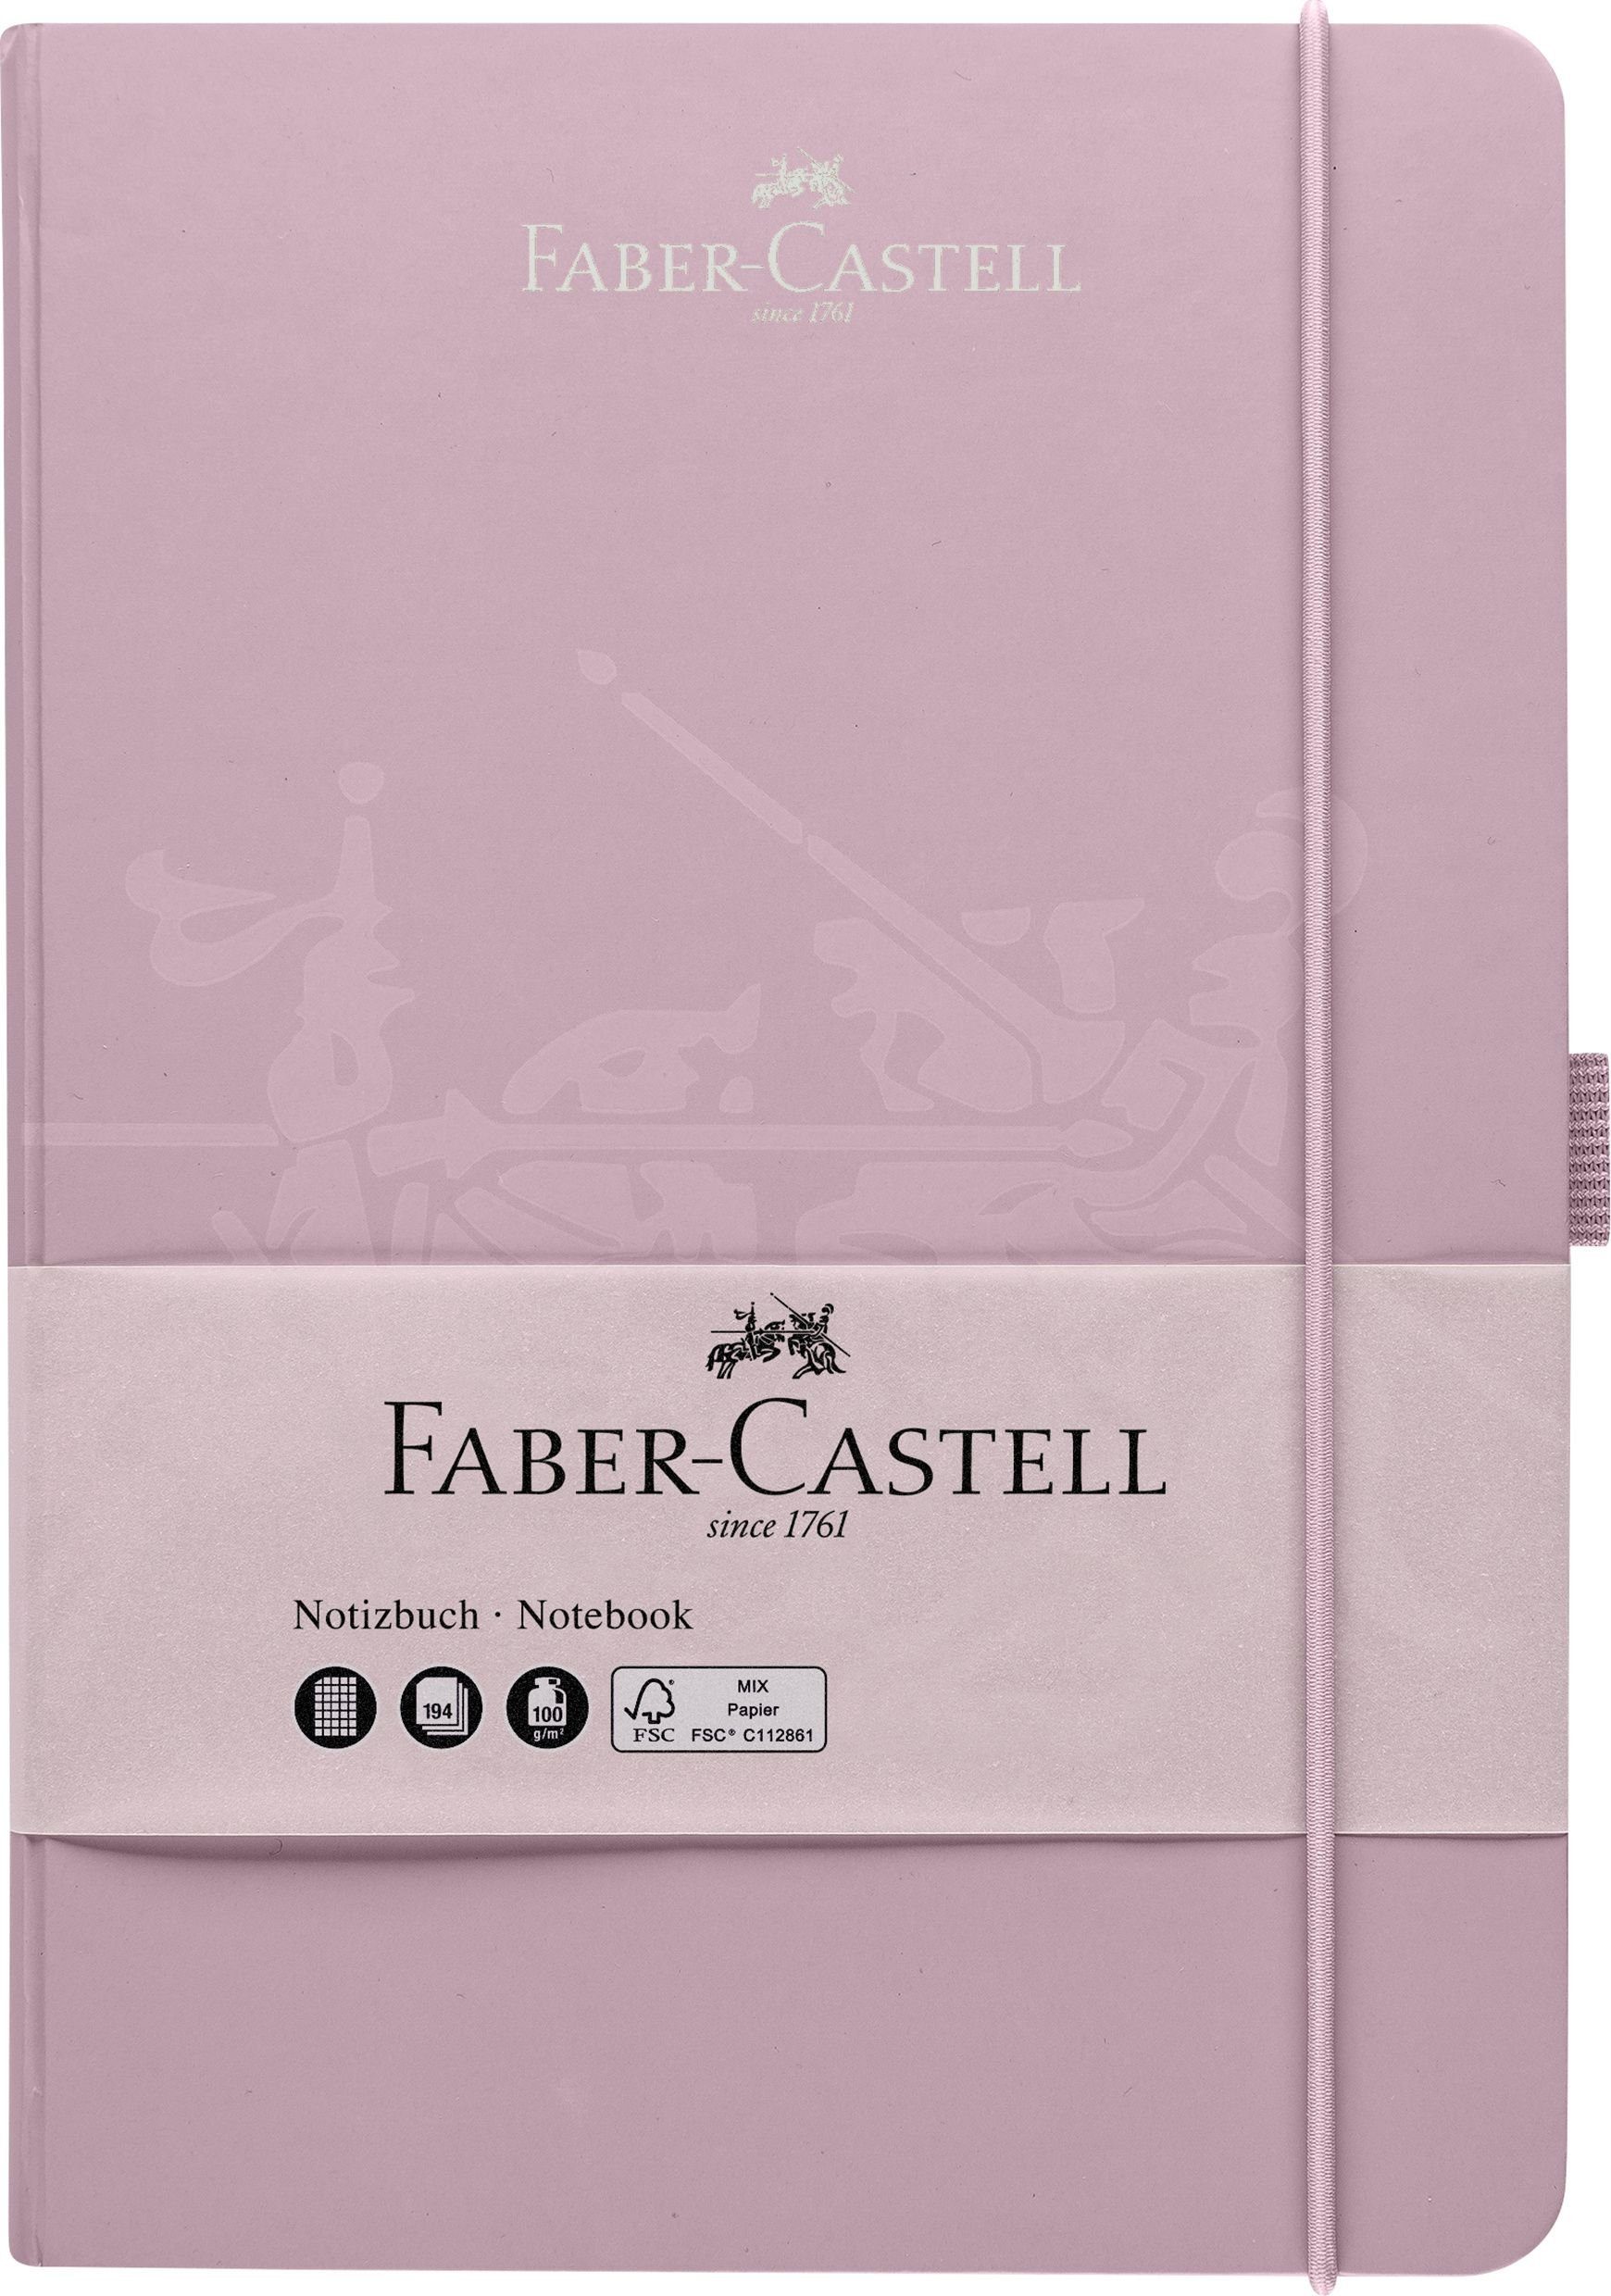 Faber-Castell Formularblock FABER-CASTELL Notizbuch, DIN A5, kariert, rose